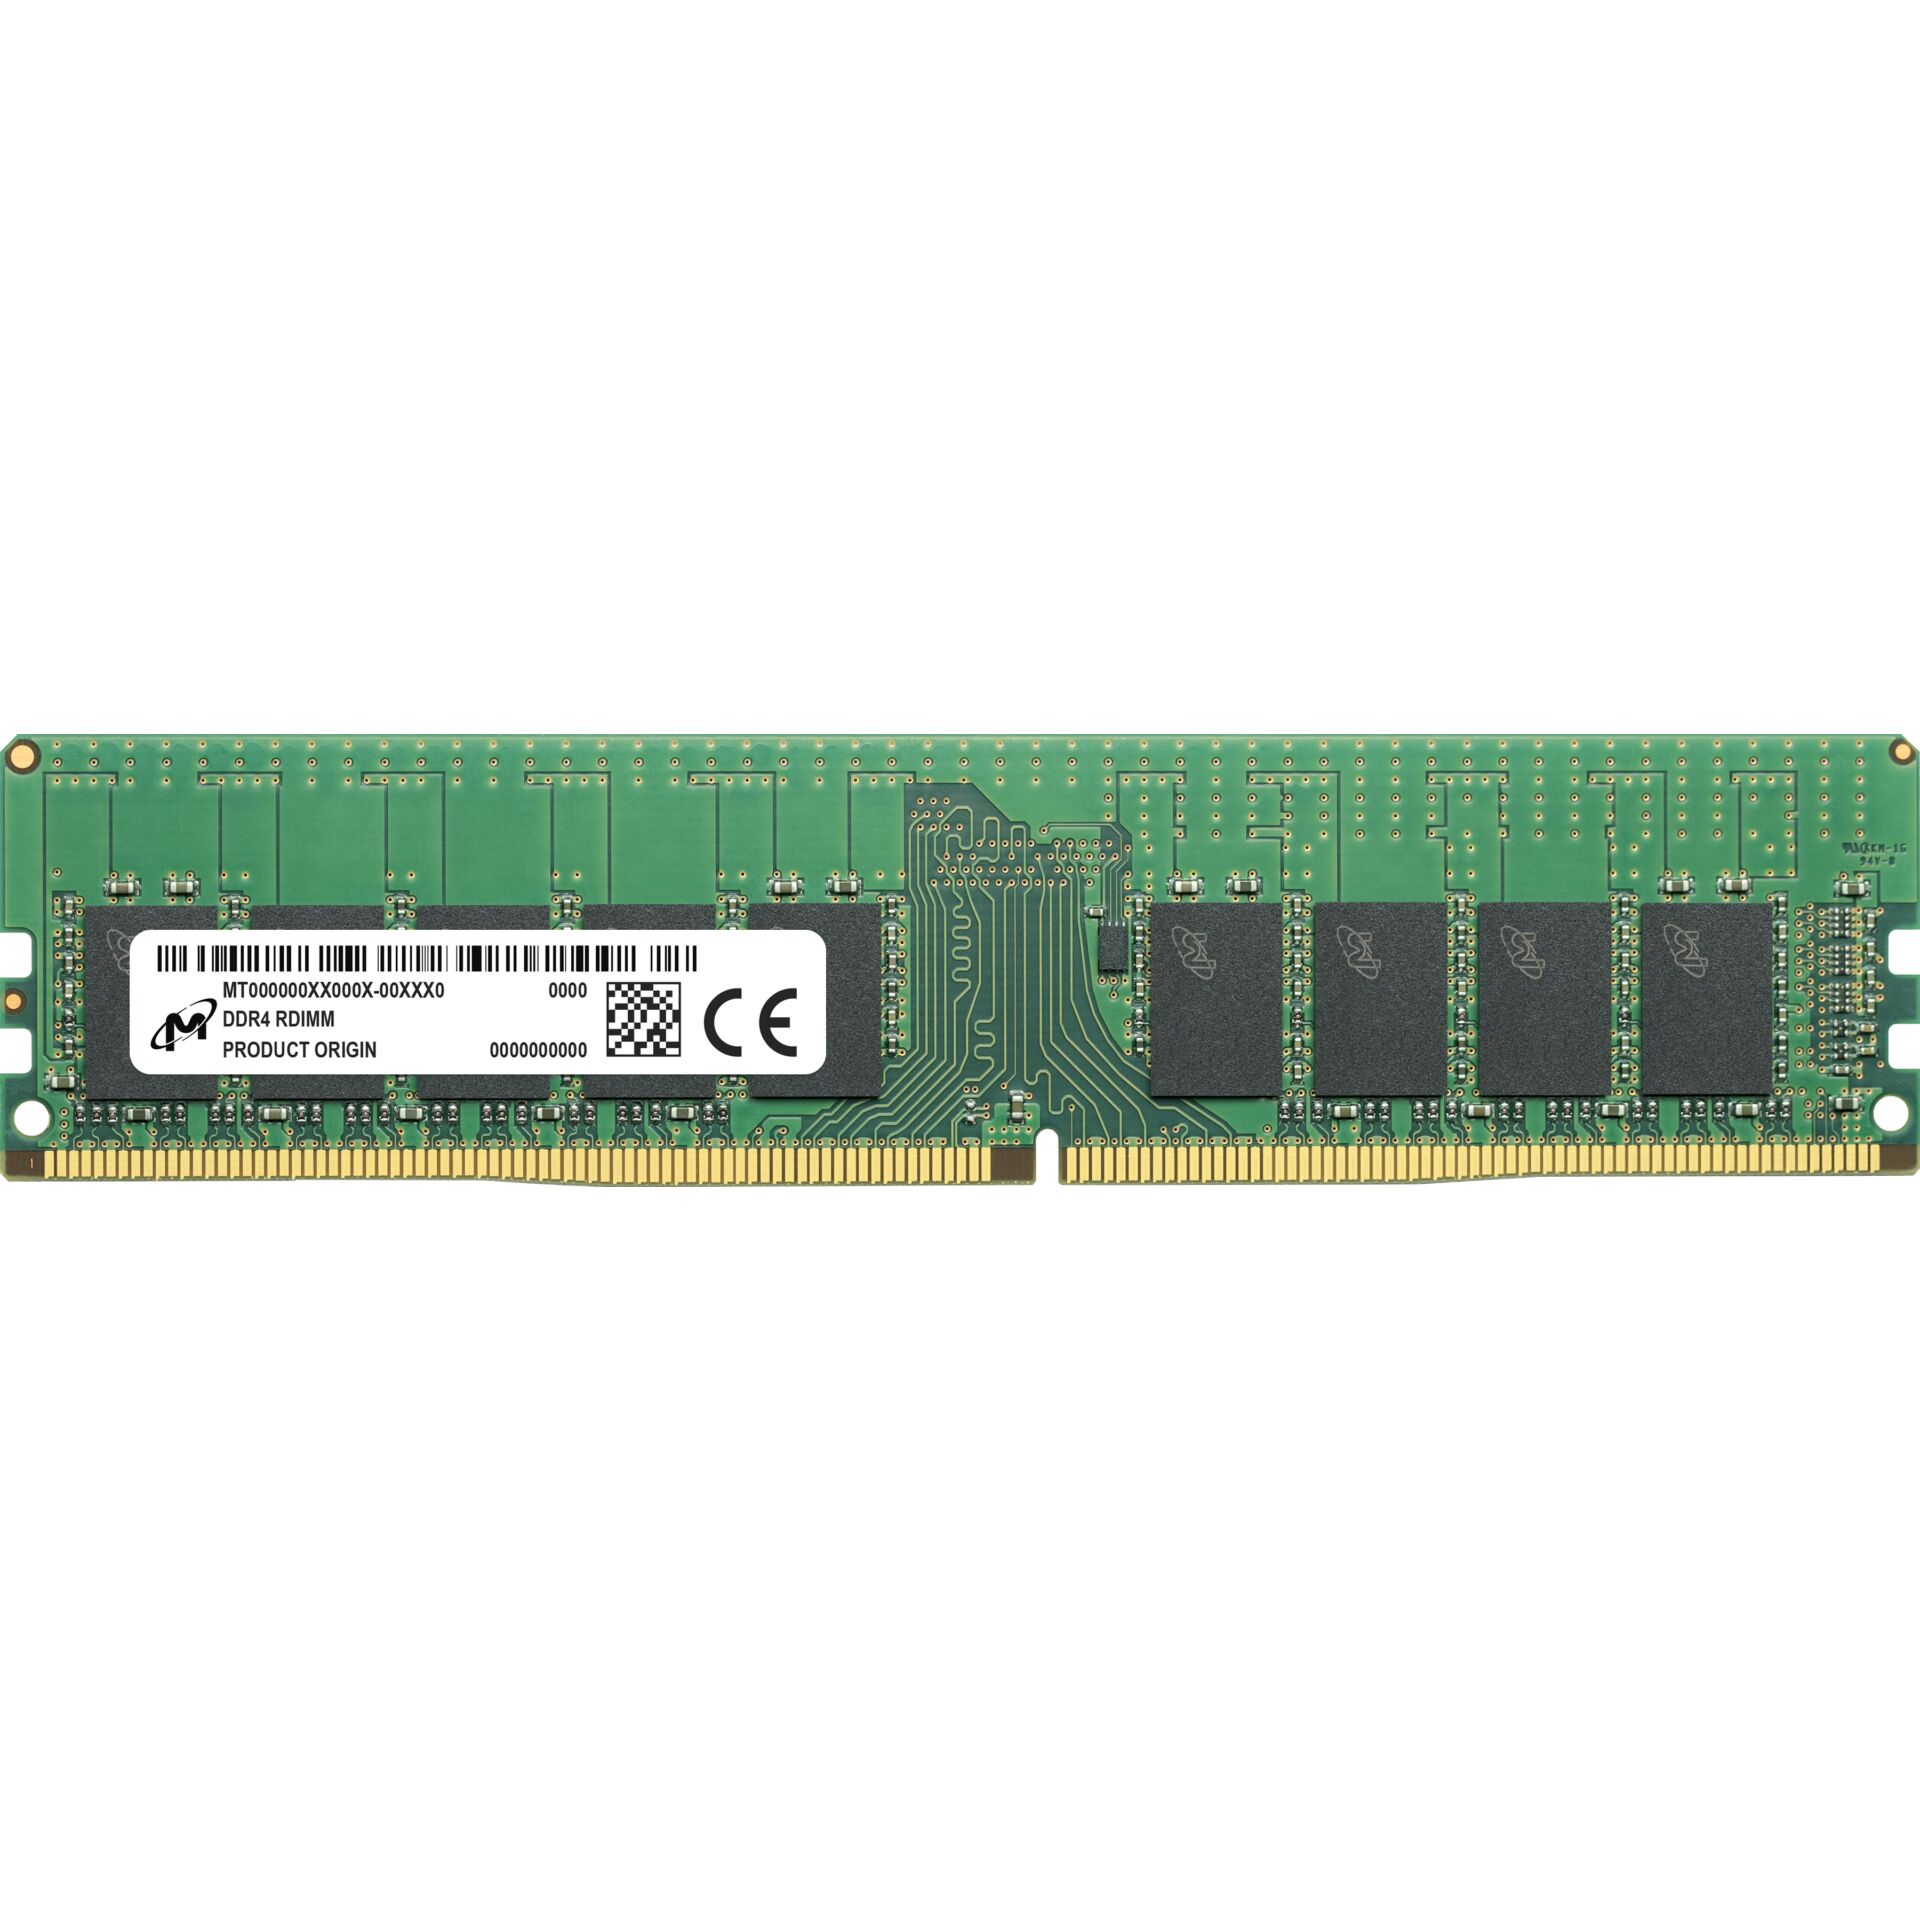 Micron 16GB DDR4-3200 ECC UDIMM 1Rx8 CL22